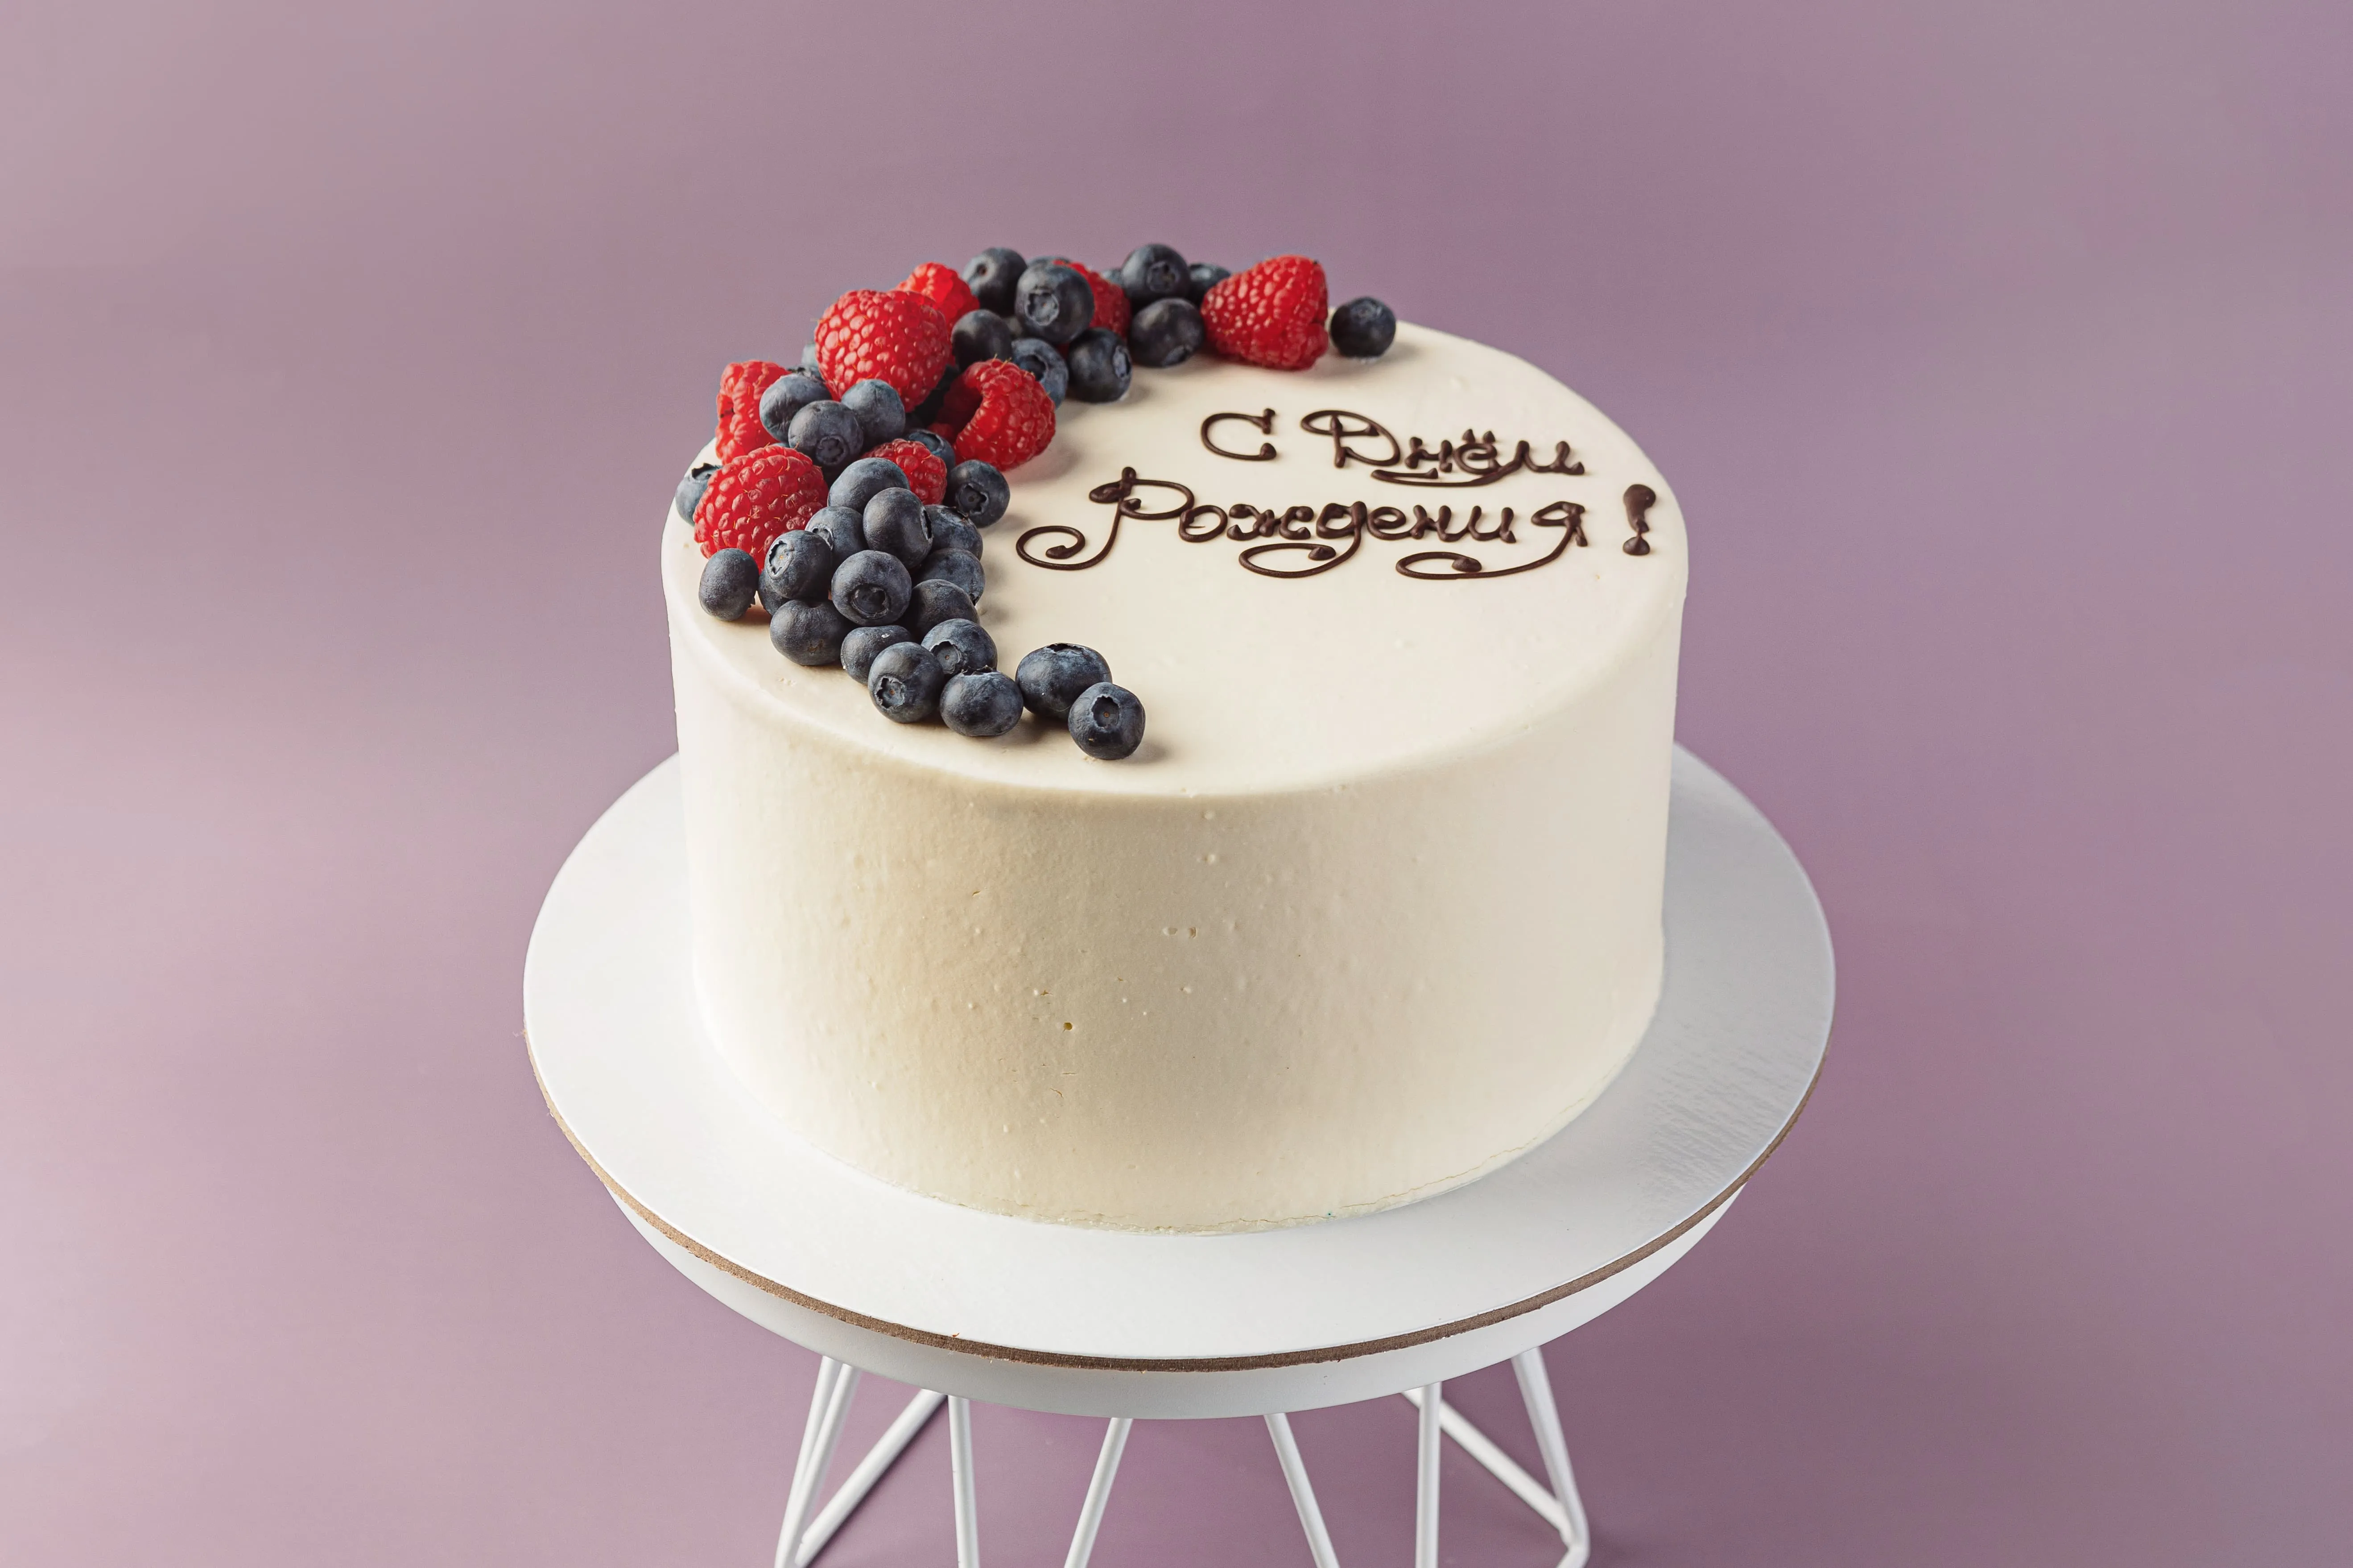 Открытка большая С Днем рождения торт